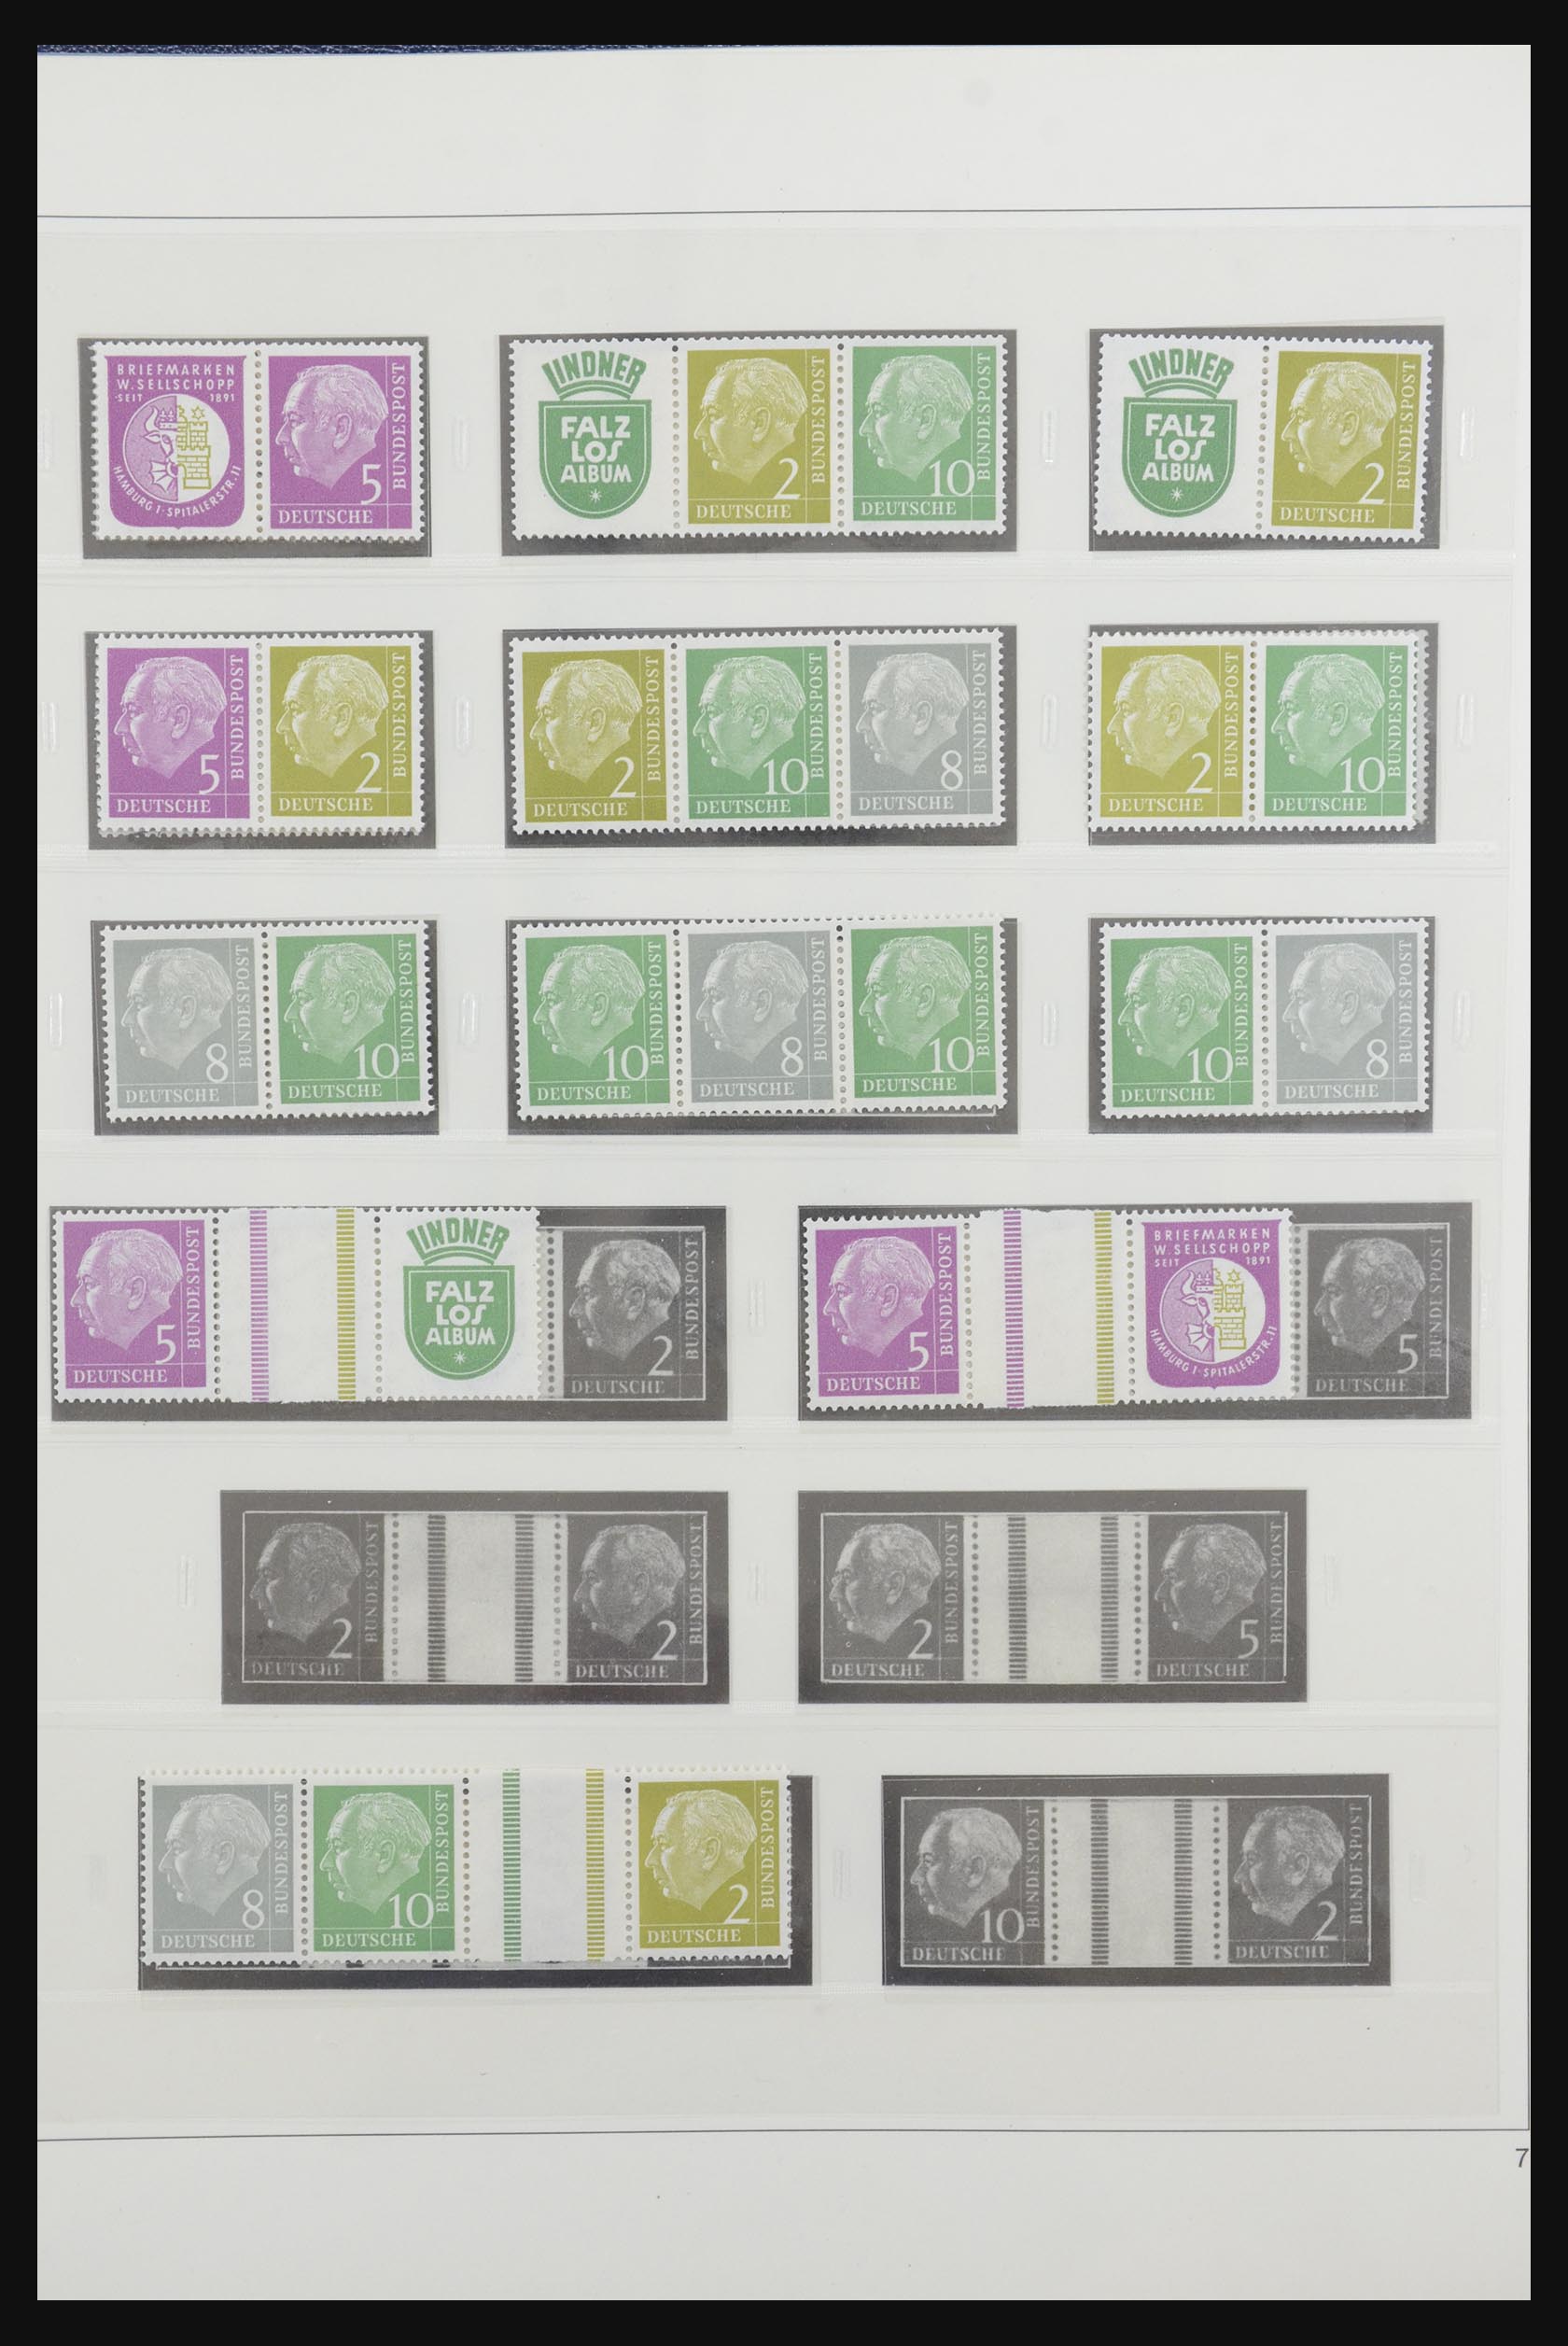 31842 008 - 31842 Bundespost combinations 1951-2003.